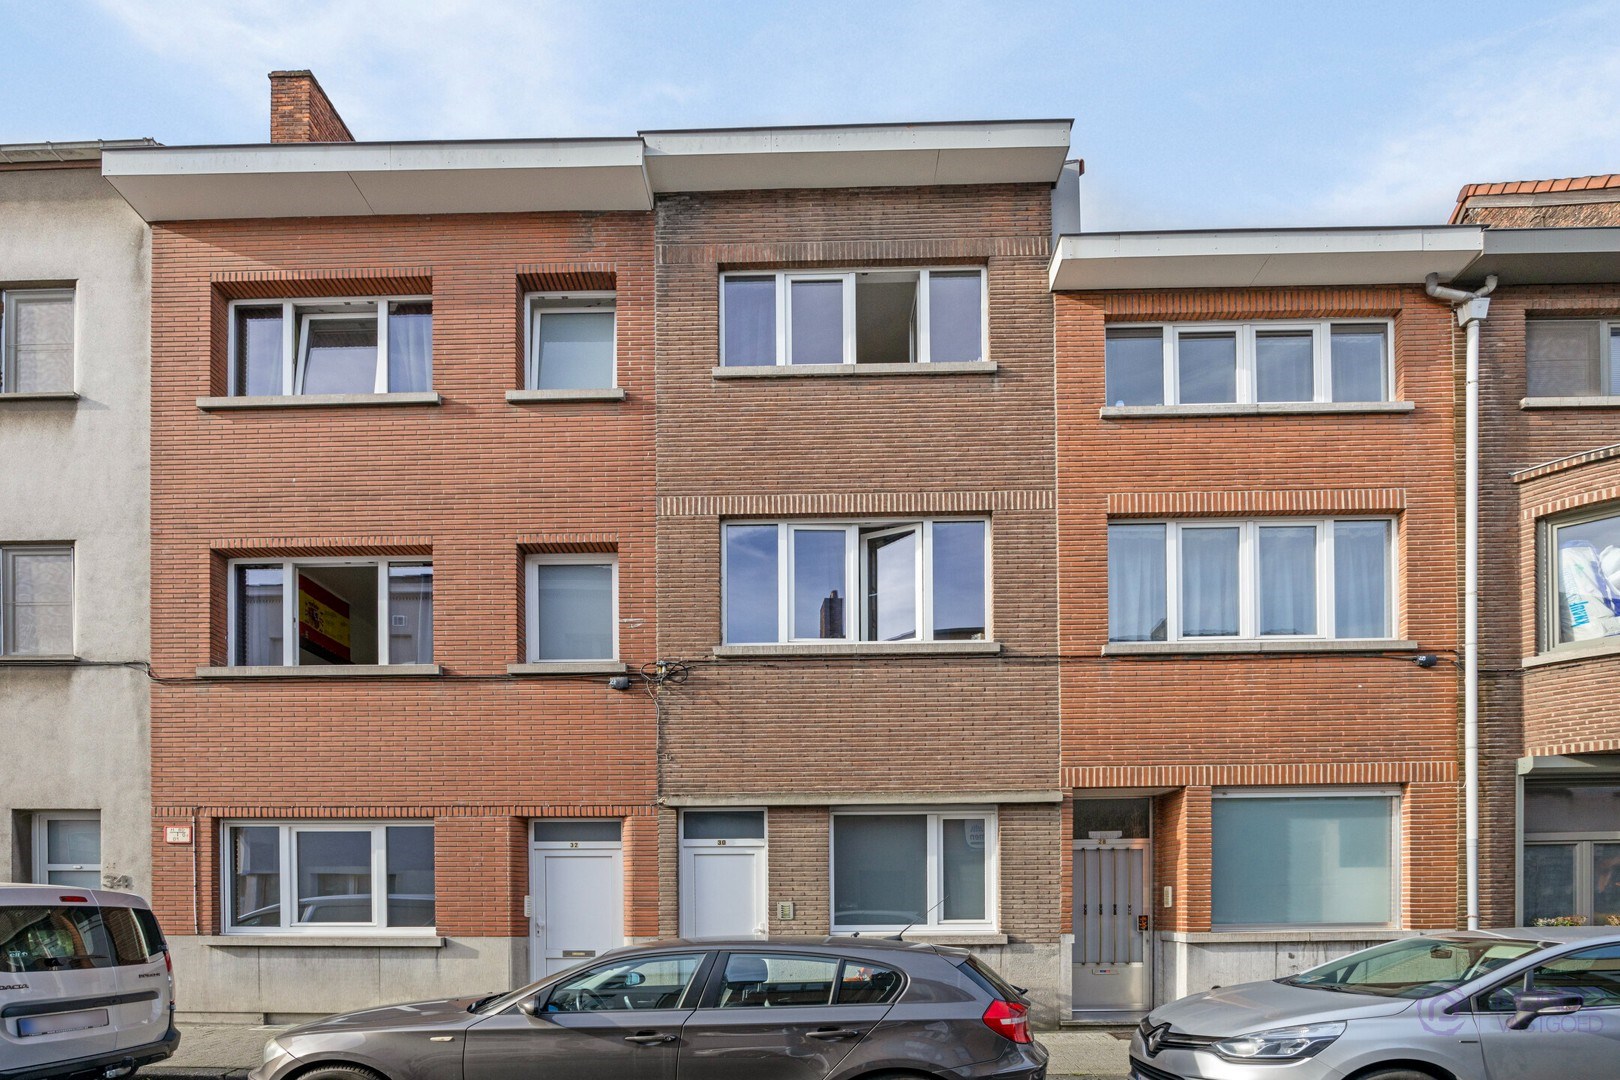 Investeringspand - Studentenwoningen aan het station van Mechelen! foto 10